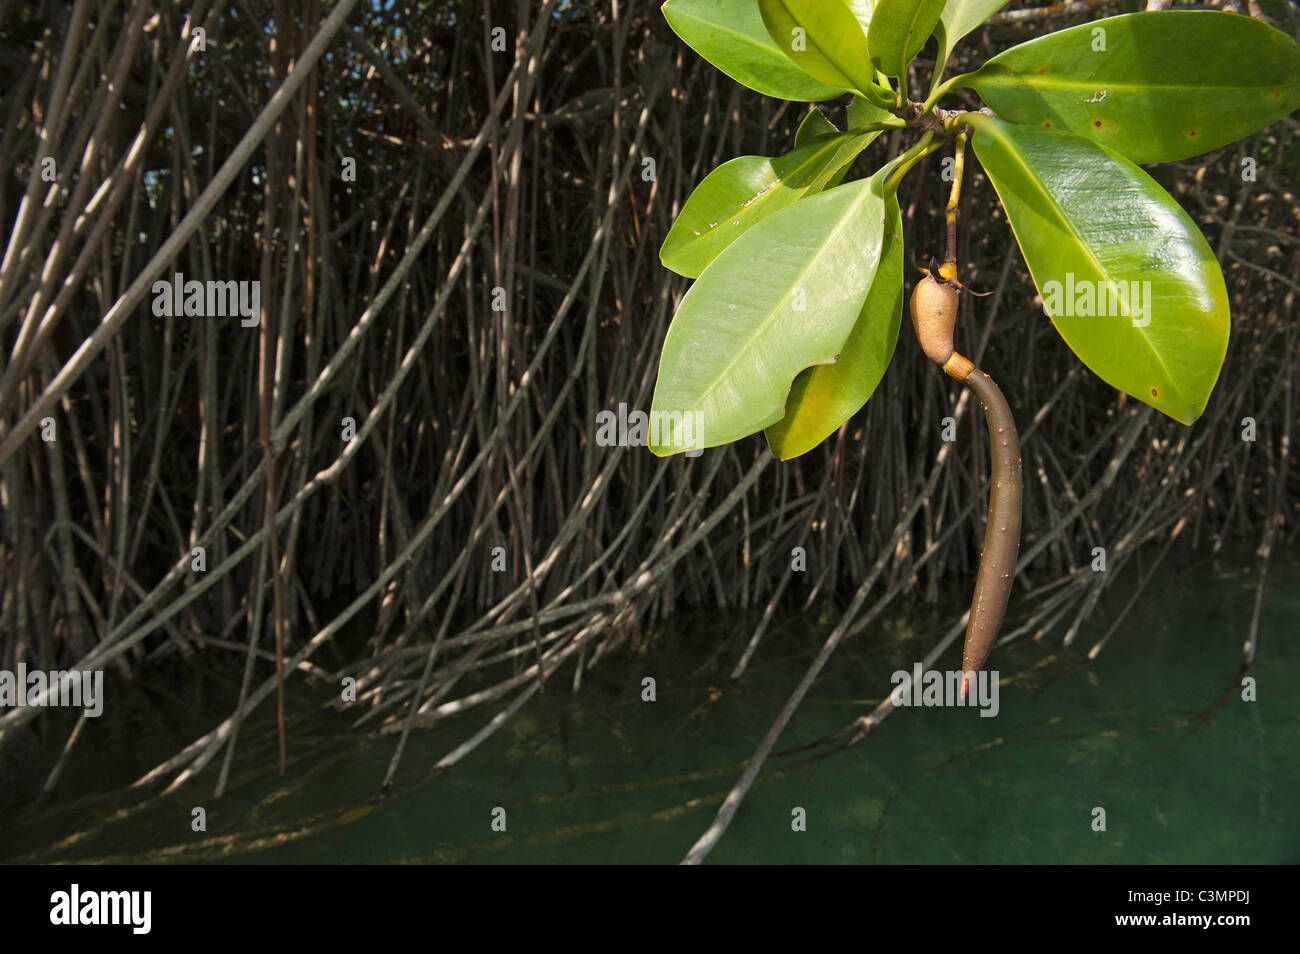 El mangle rojo (Rhizophora mangle), los plantones en una planta. Sian Ka'an, Reserva de la Biosfera de la península de Yucatán, México. Foto de stock